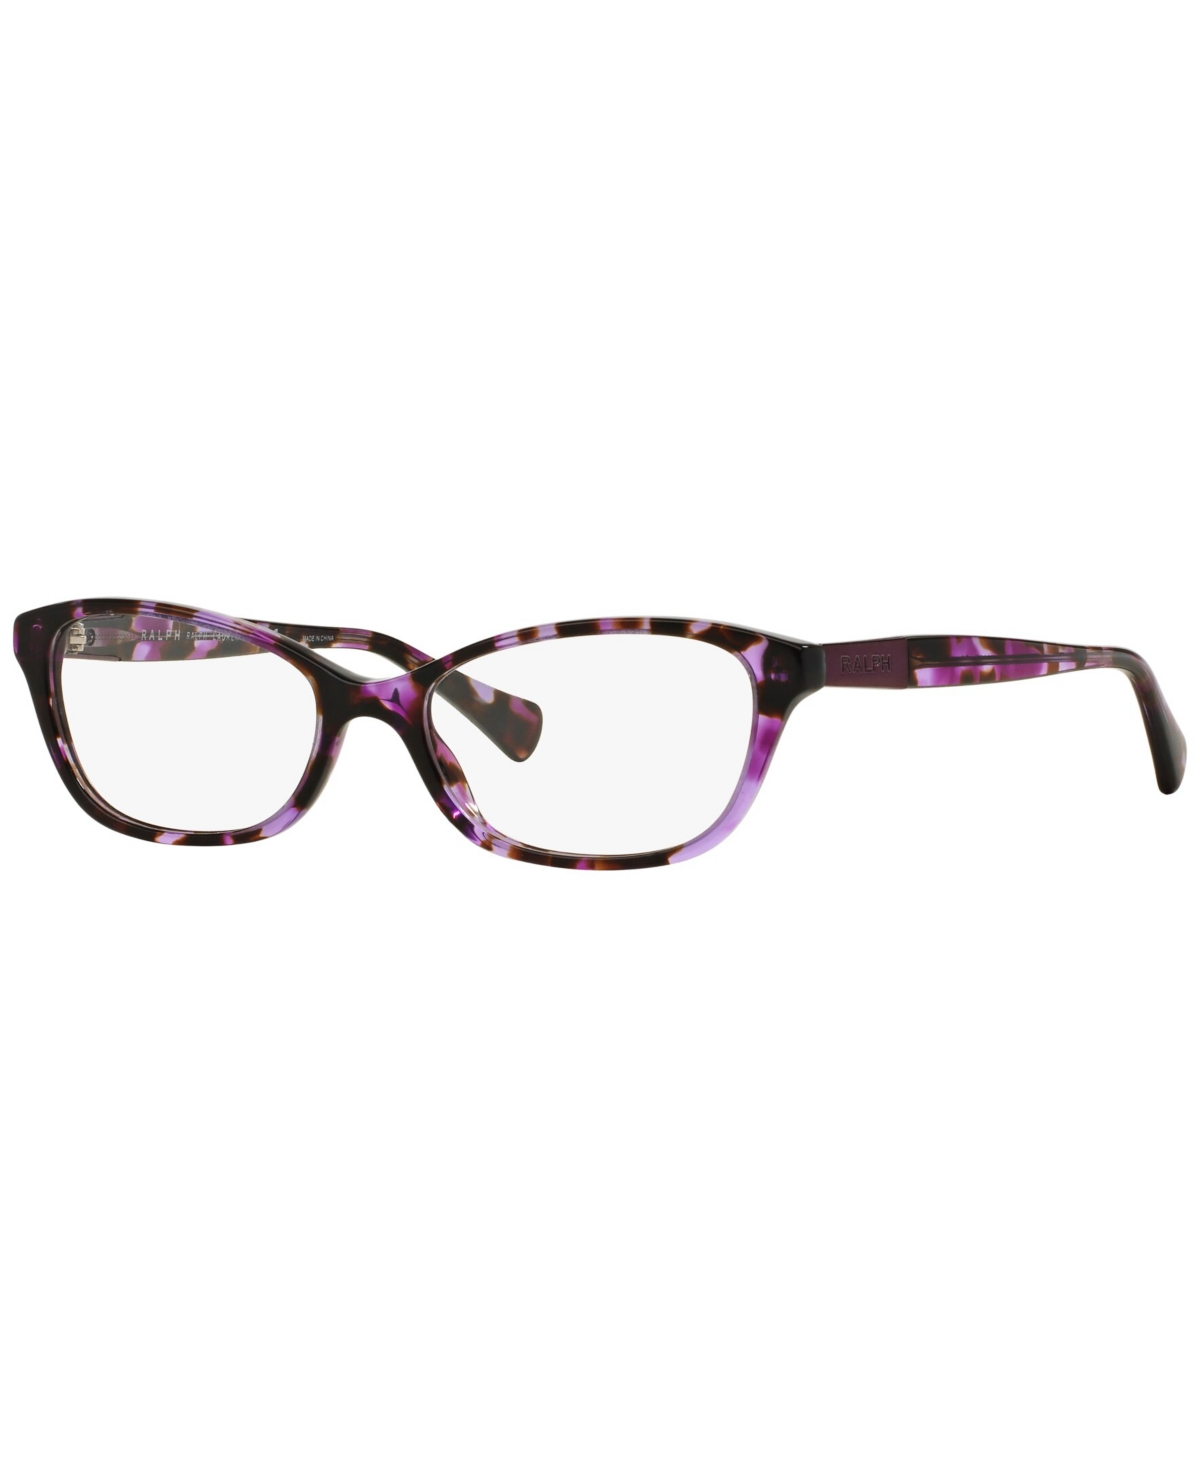 RA7049 Women's Cat Eye Eyeglasses - Violet Tortoise